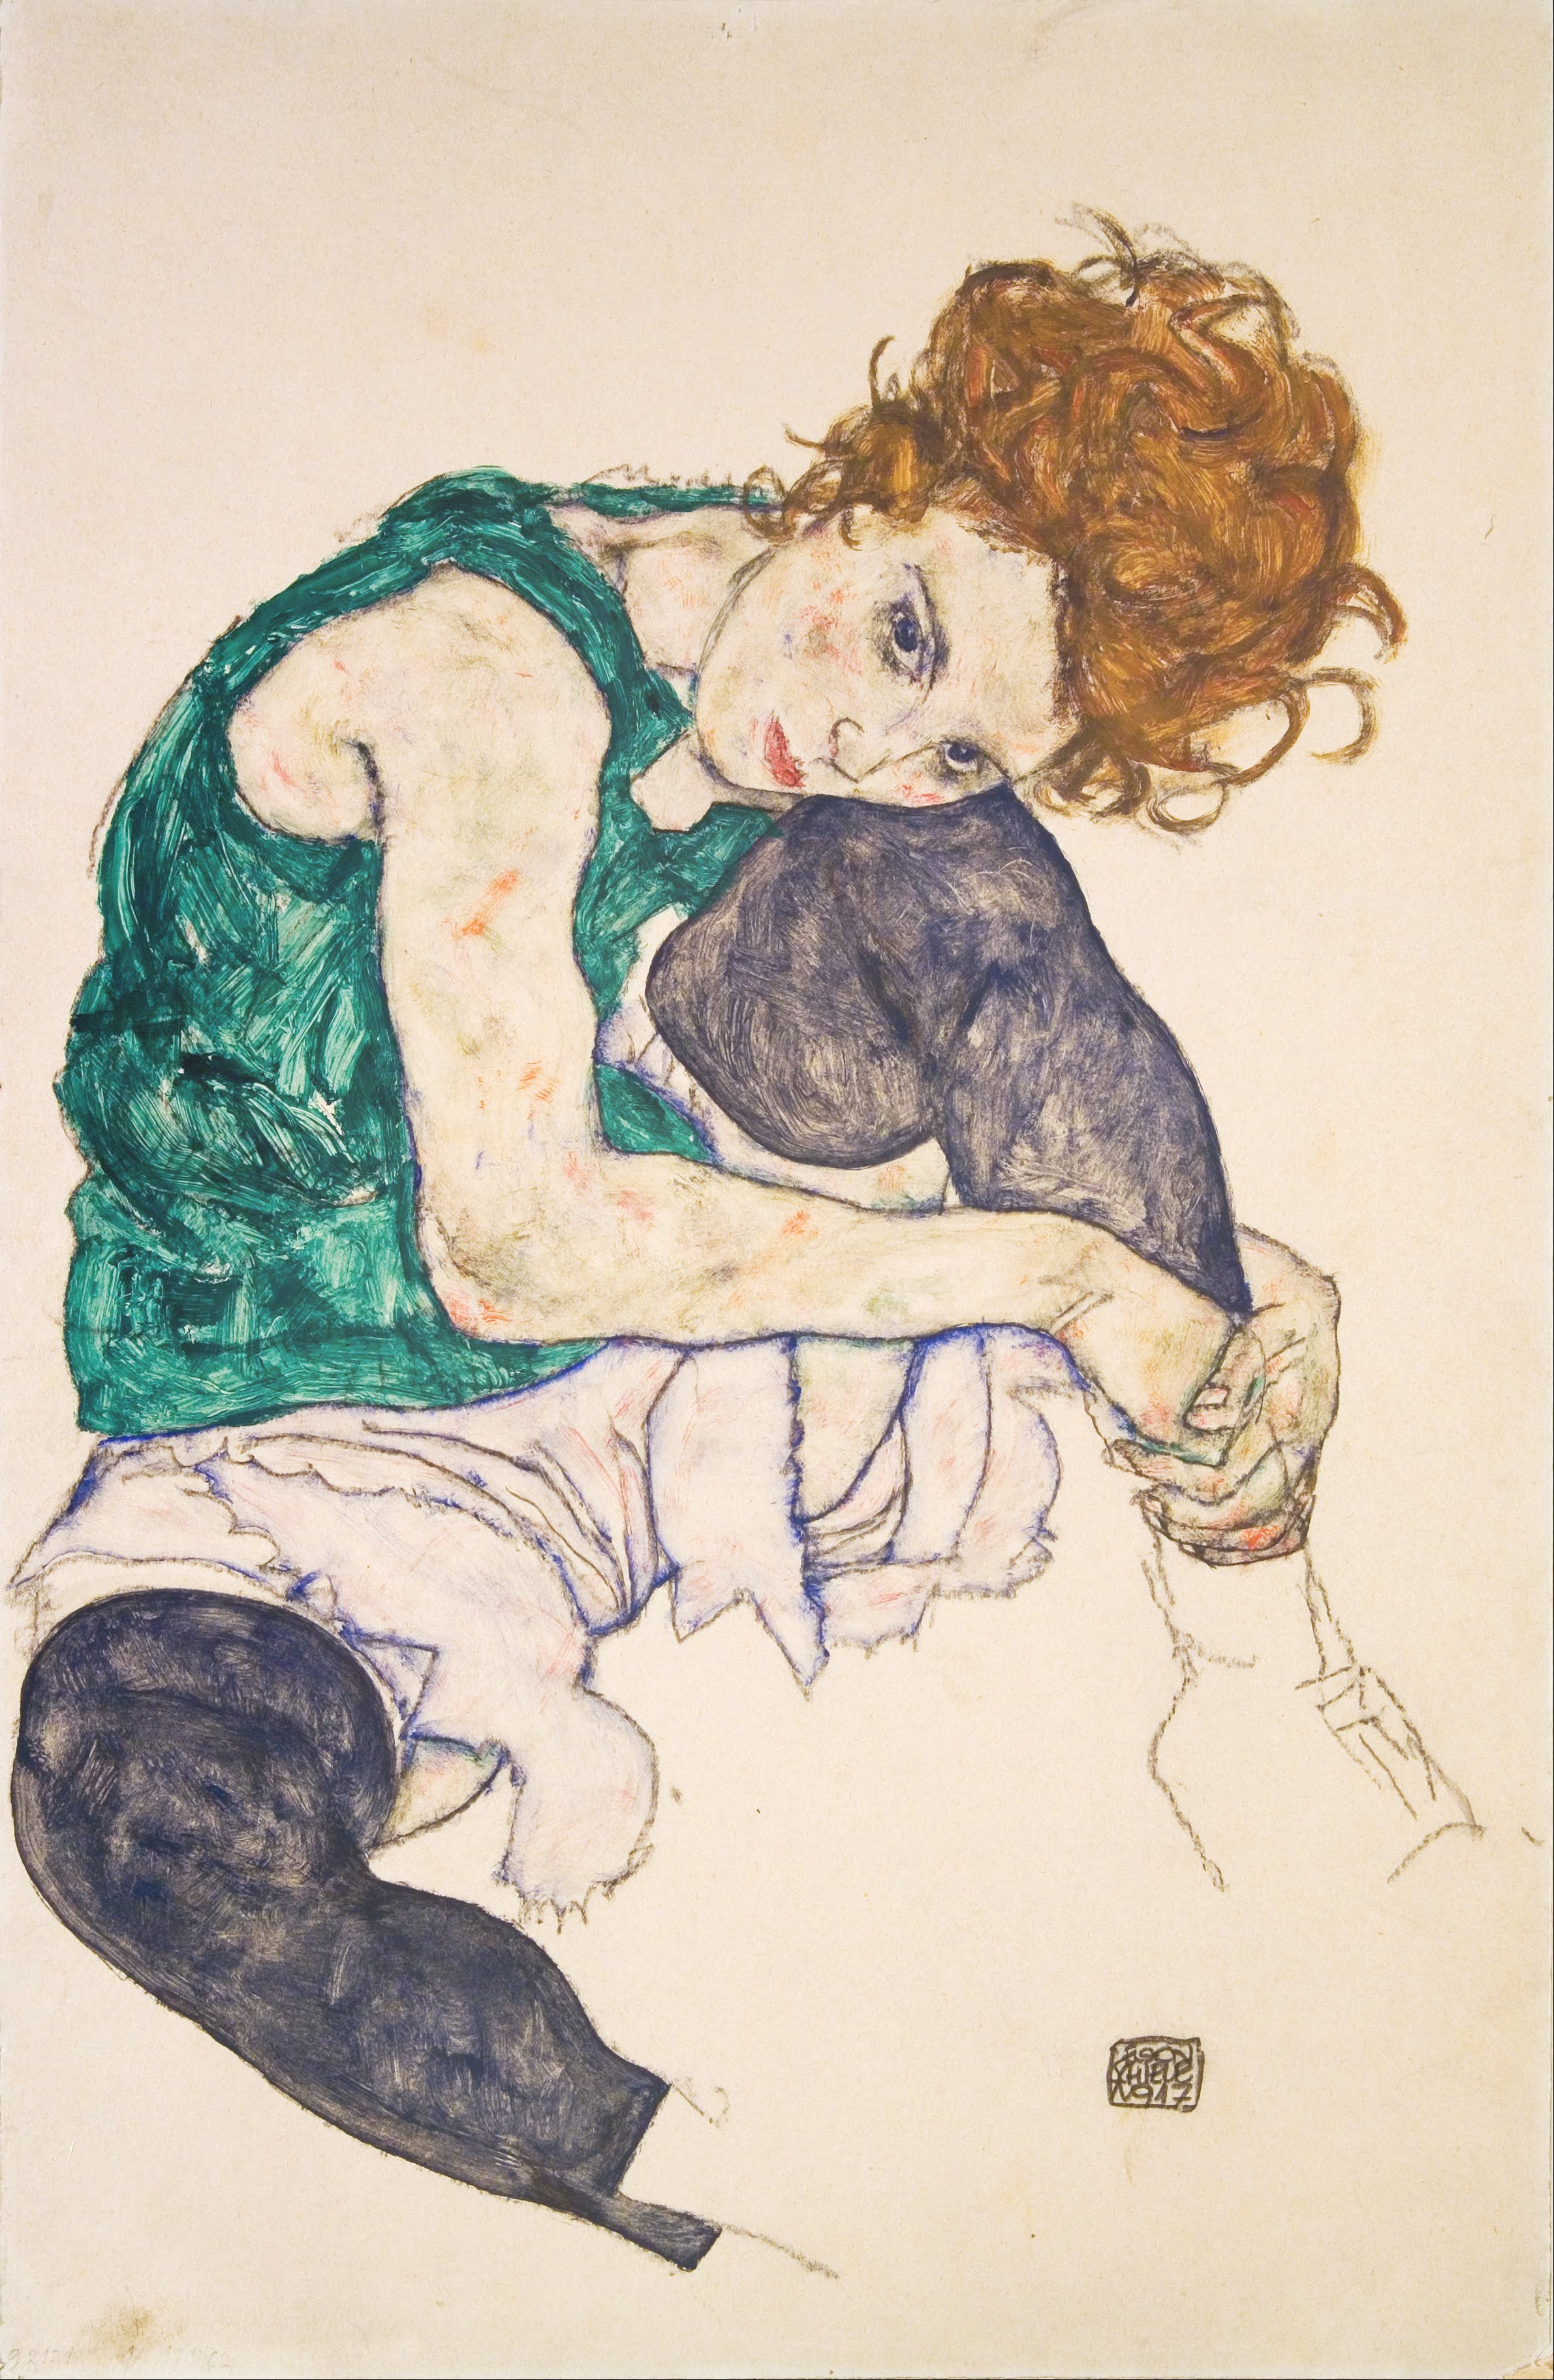 La mujer sentada con las rodillas dobladas by Egon Schiele - 1917 - 46 x 30,5 cm Národní galerie v Praze